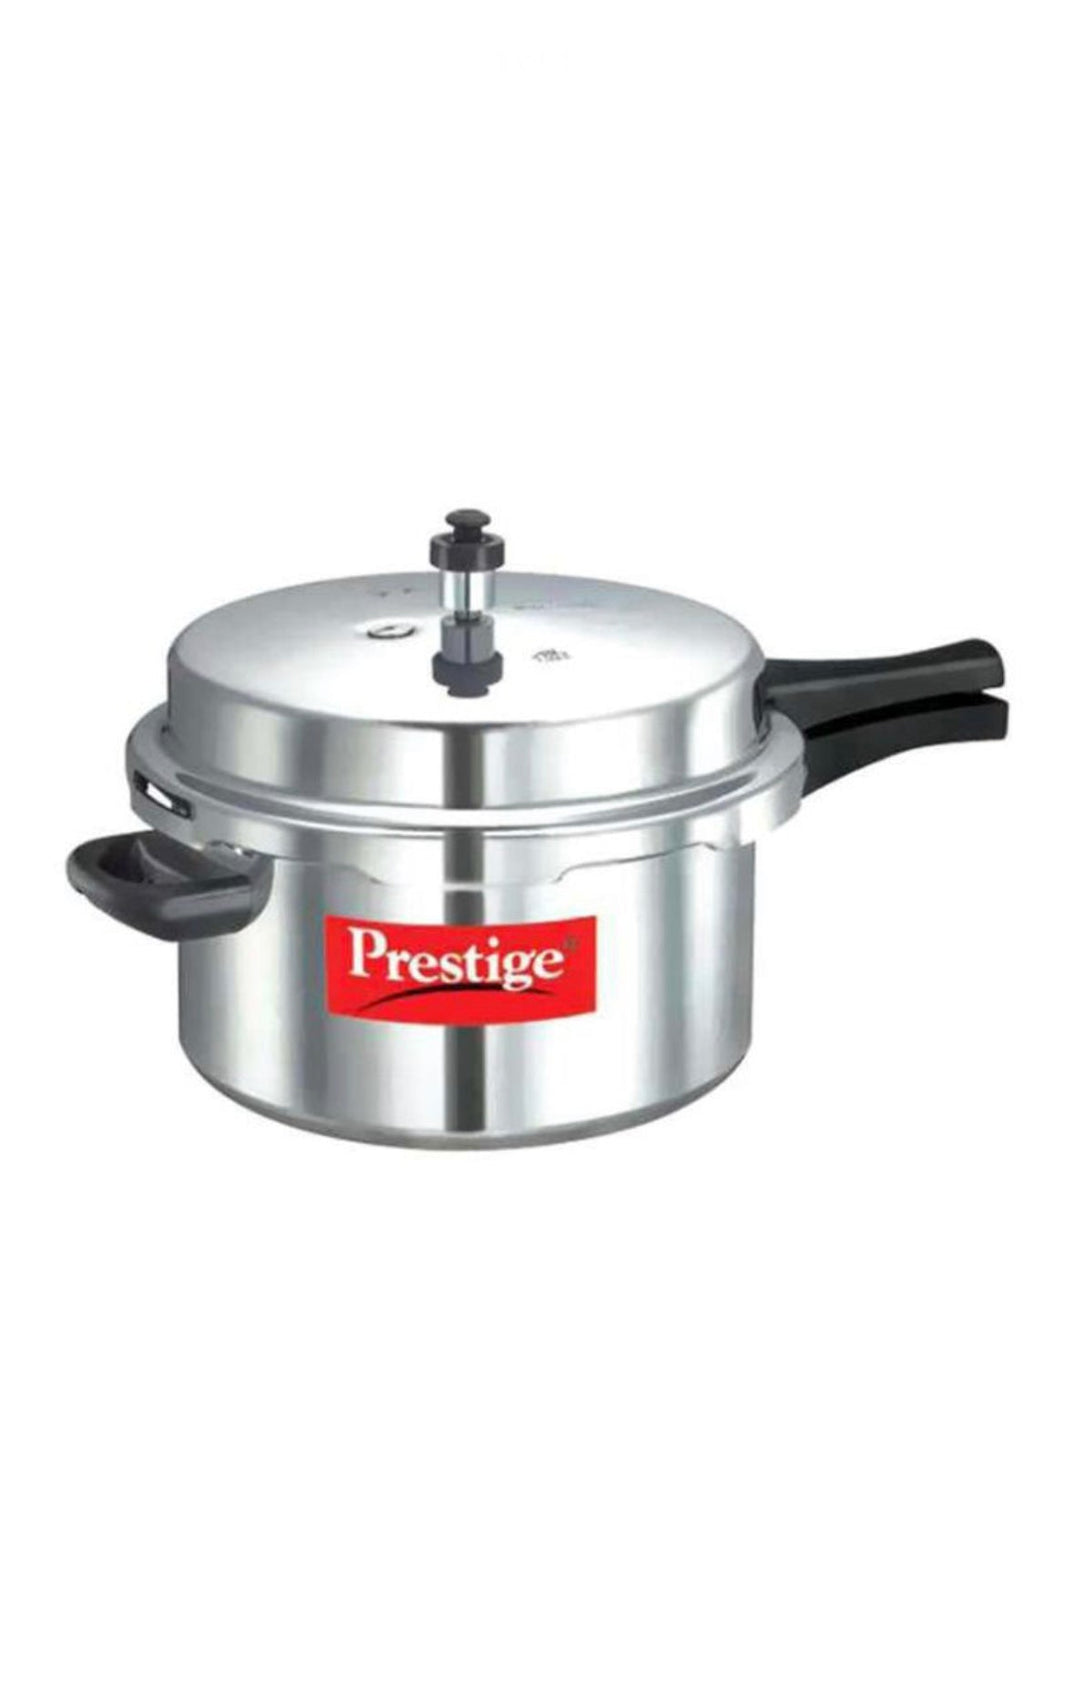 Prestige Popular Alu Pressure Cooker Silver 7.5L